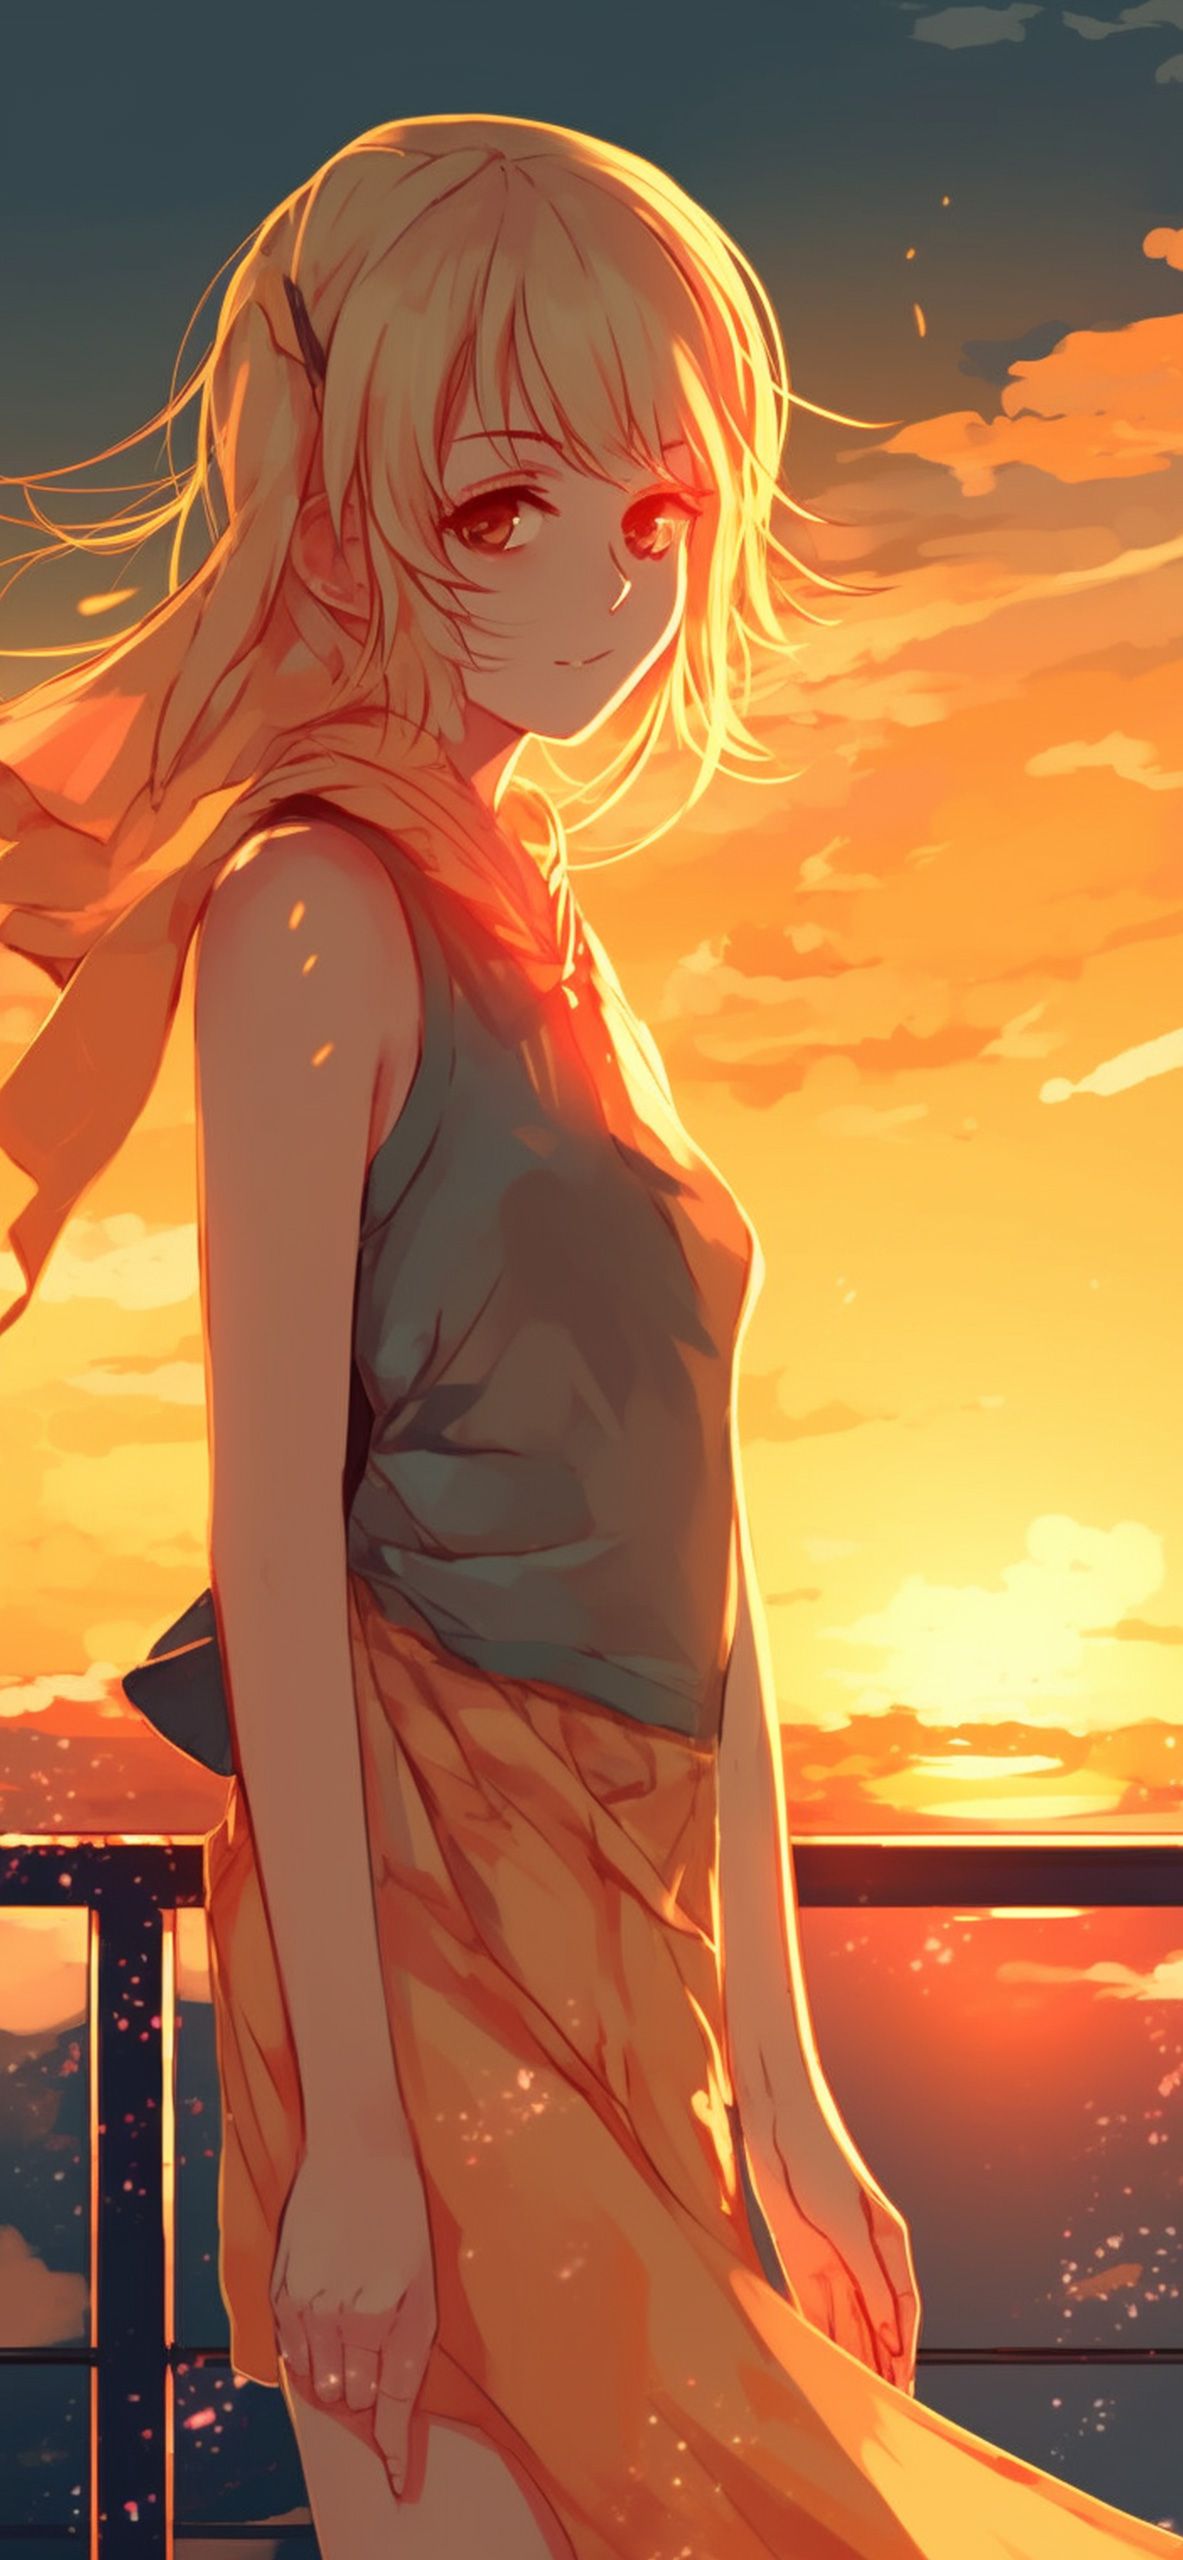 Anime Girl & Sunset Wallpaper Aesthetic Wallpaper 4k